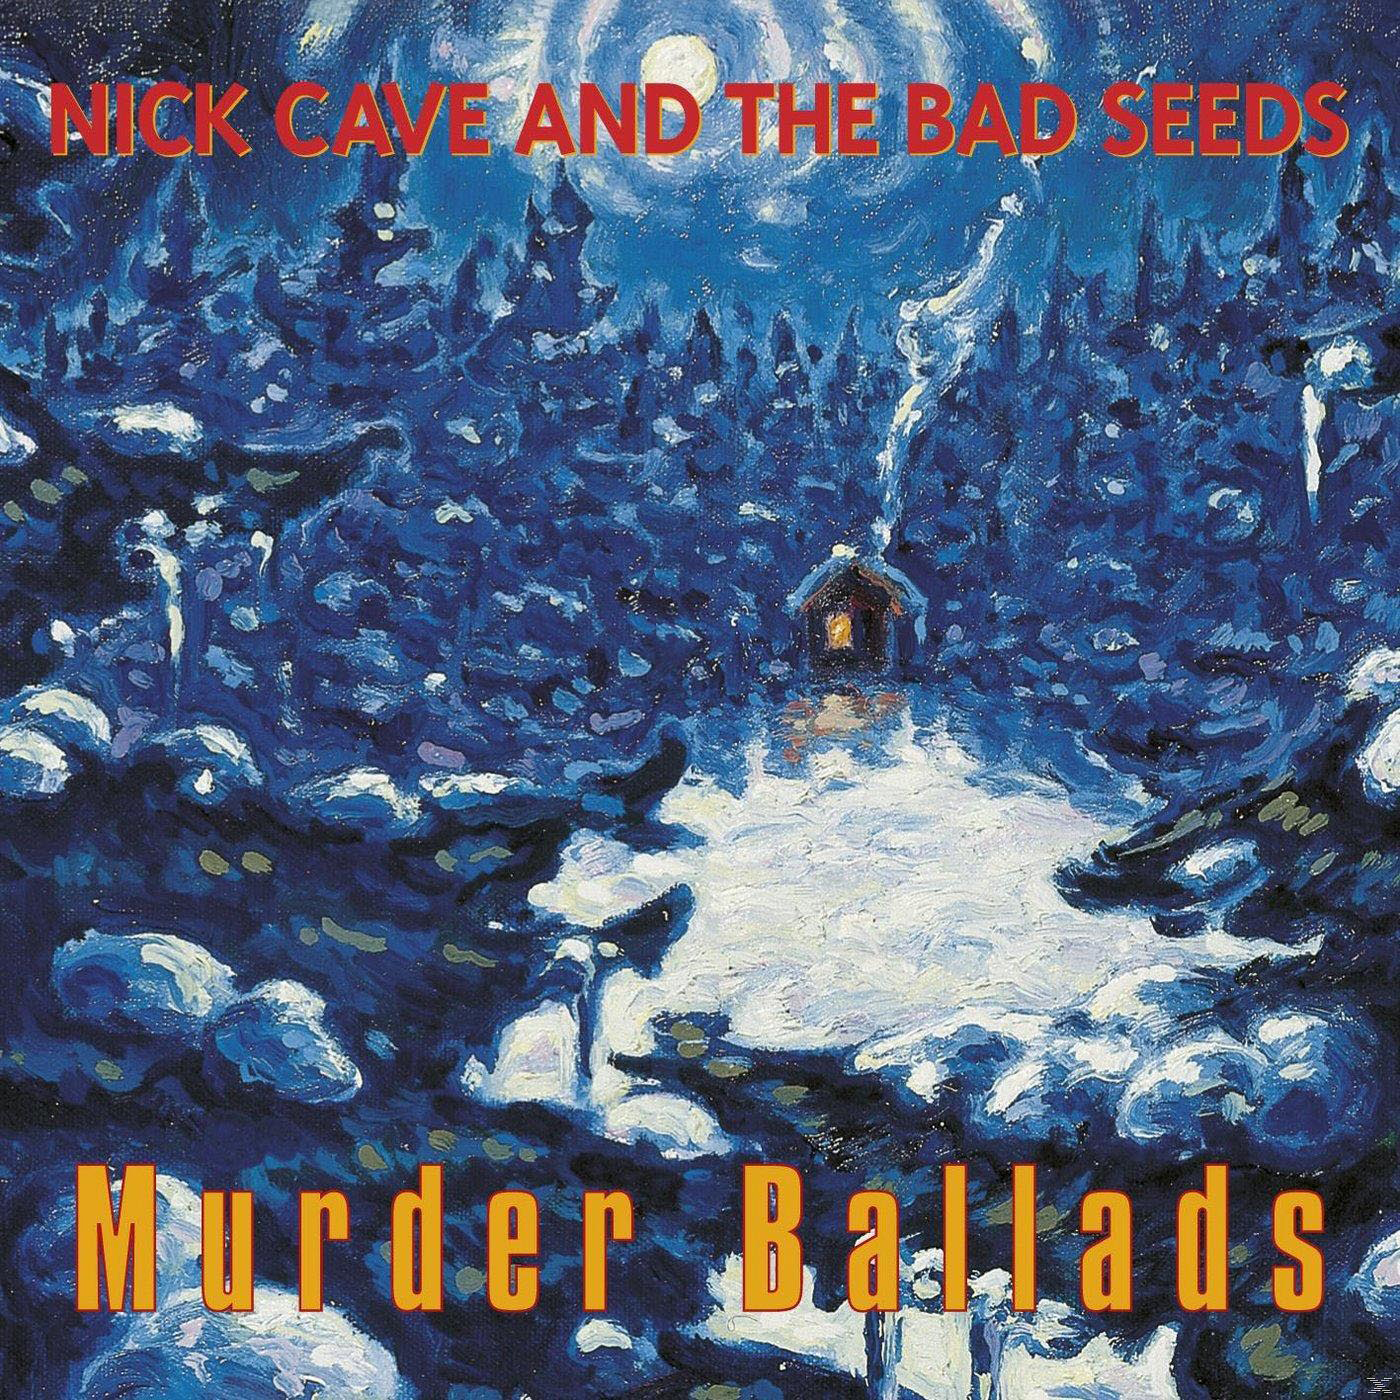 Nick Murder The Ballads - & (Vinyl) Seeds Bad Cave -